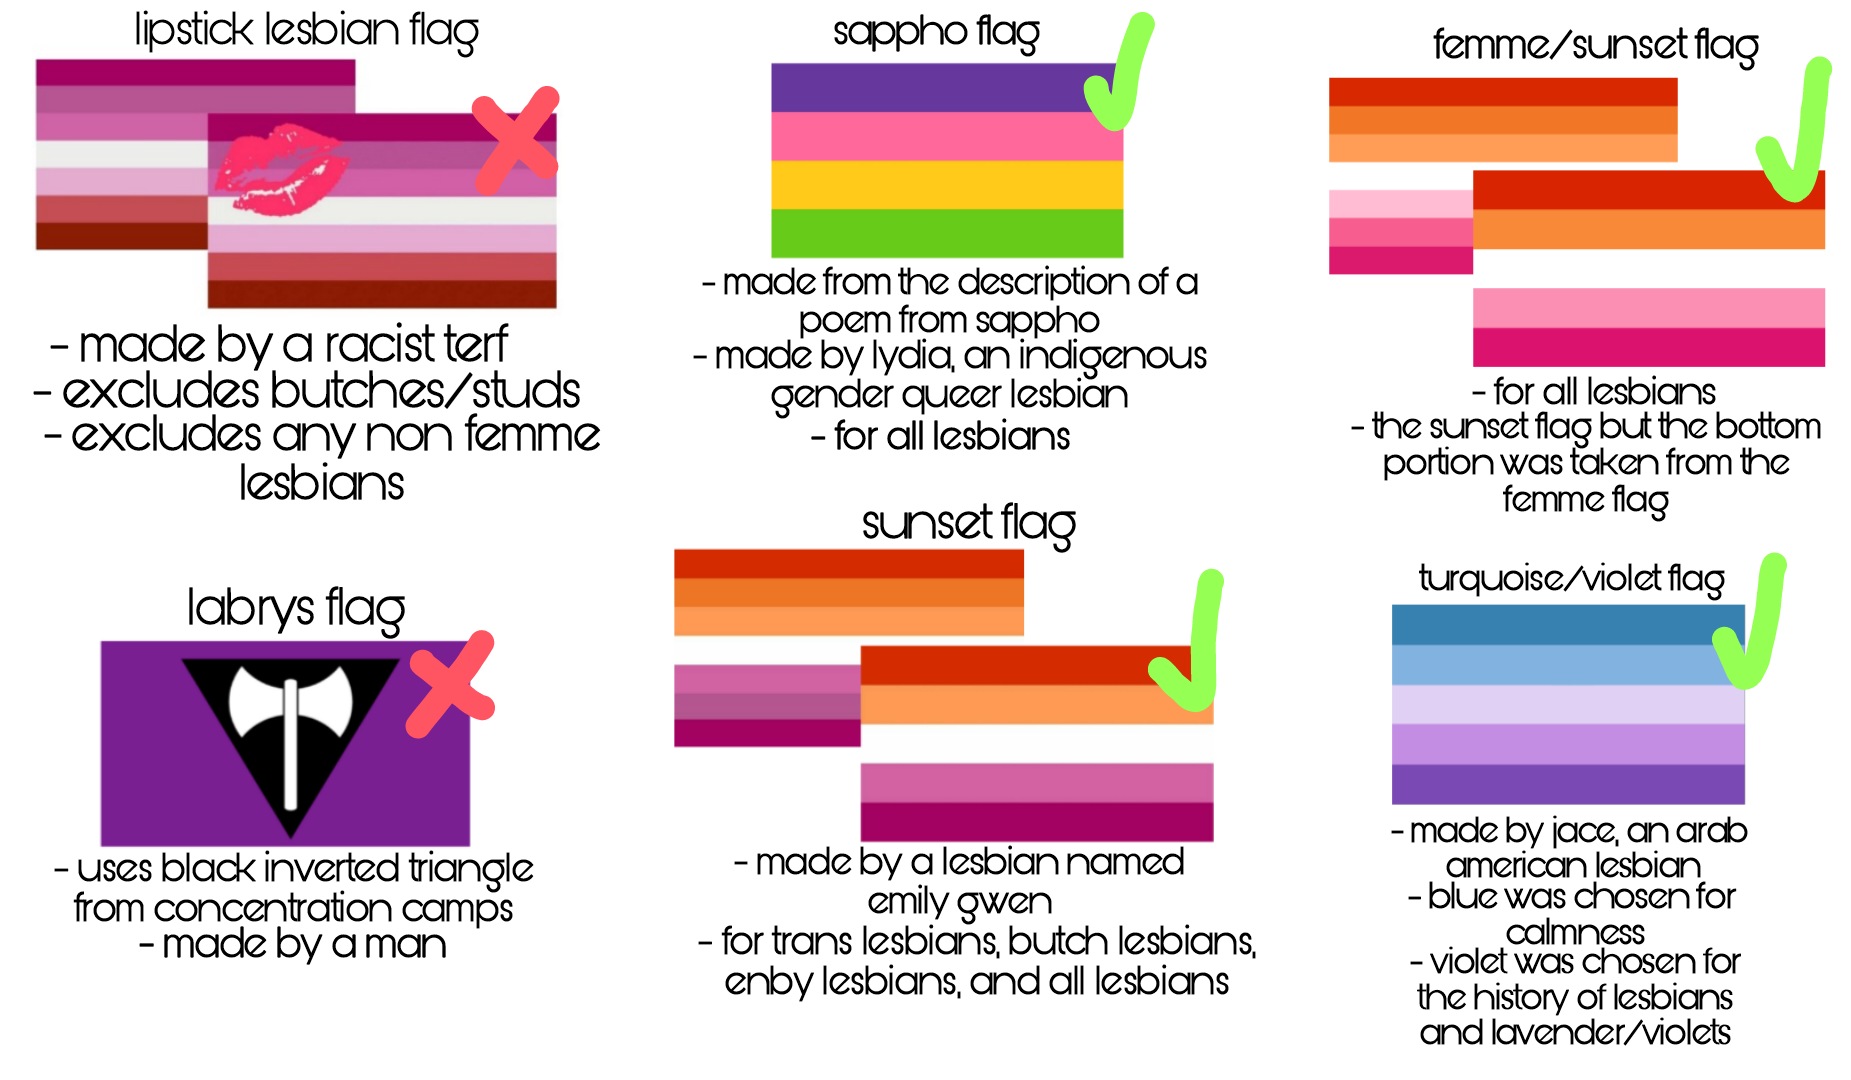 геи отличаются от лесбиянок фото 111